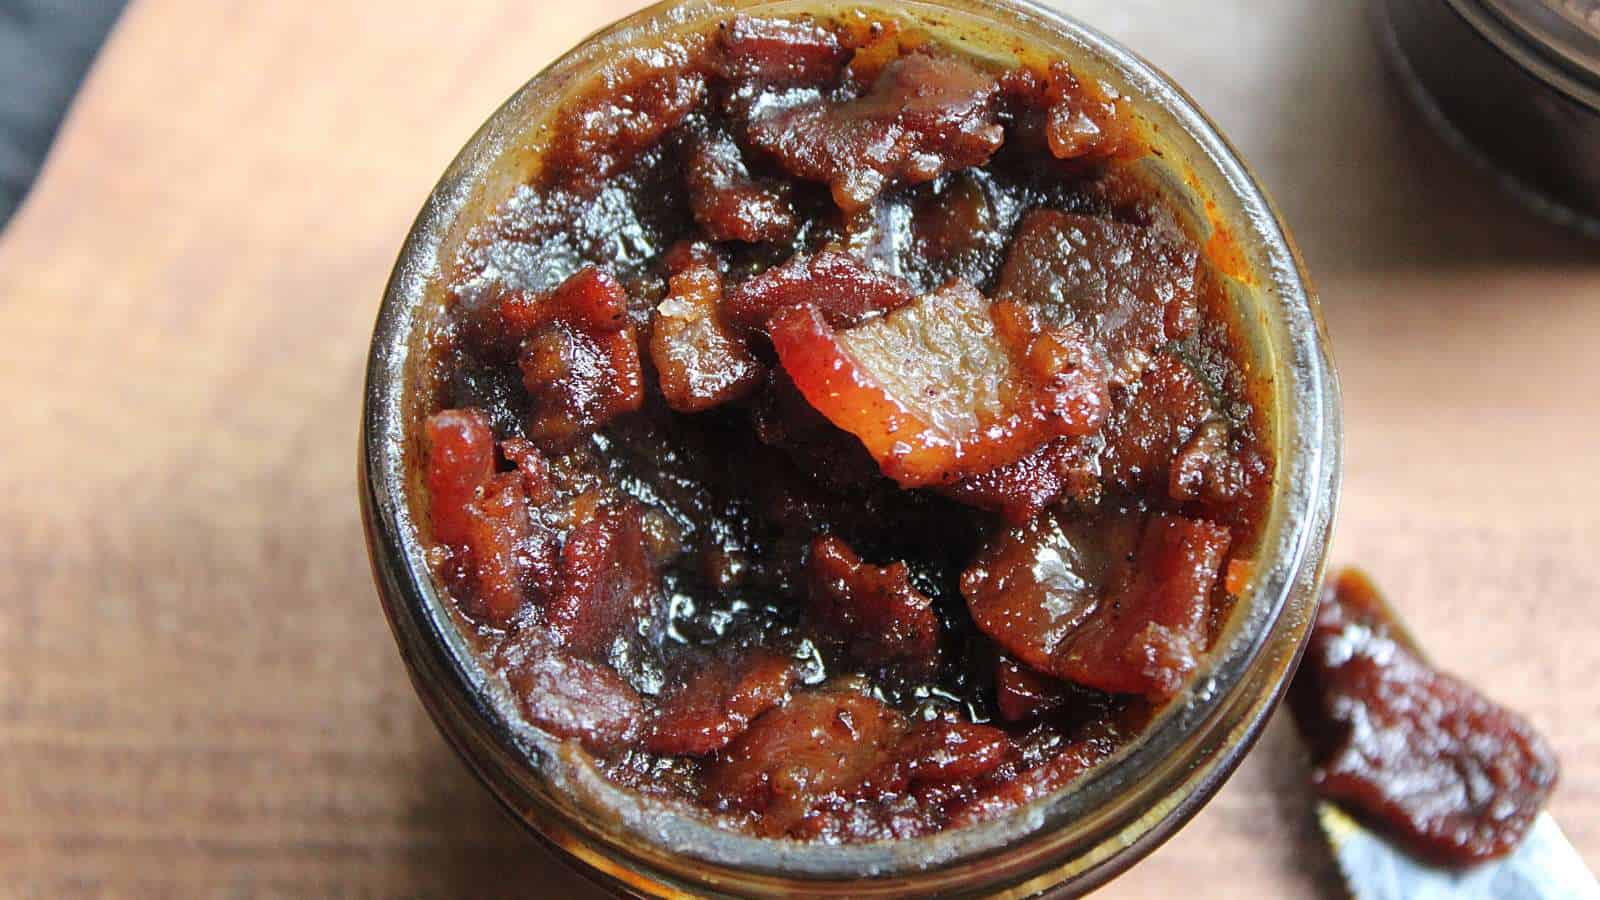 Maple bourbon bacon jam in jar.